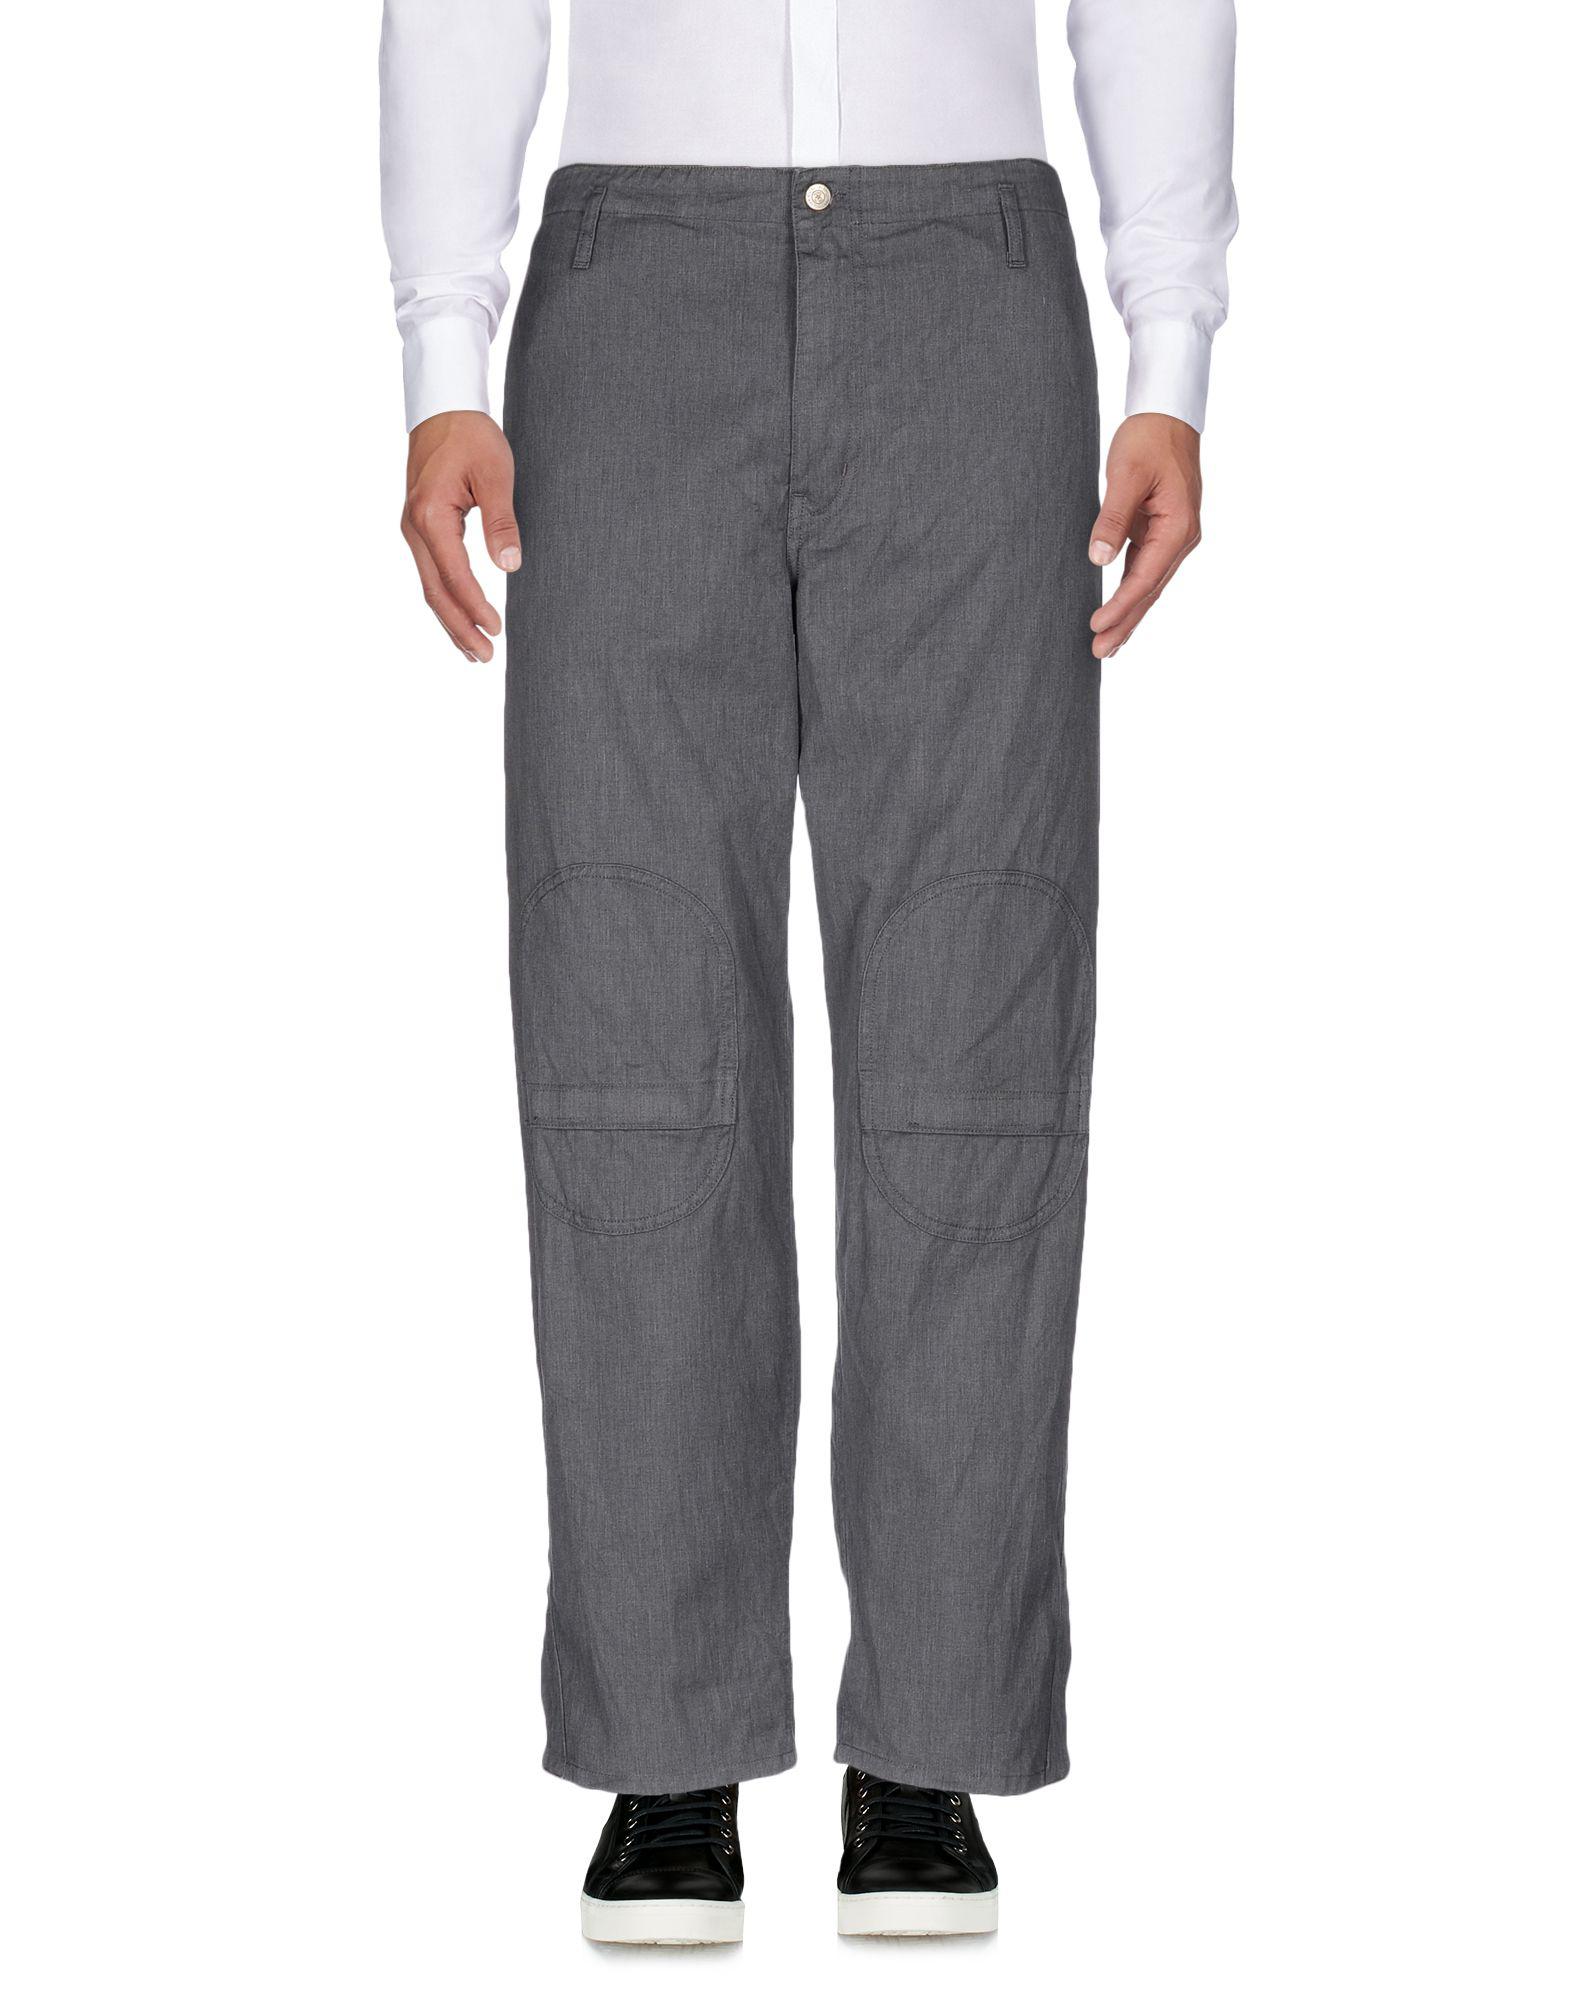 Golden Goose Deluxe Brand Casual Pants in Gray for Men - Lyst